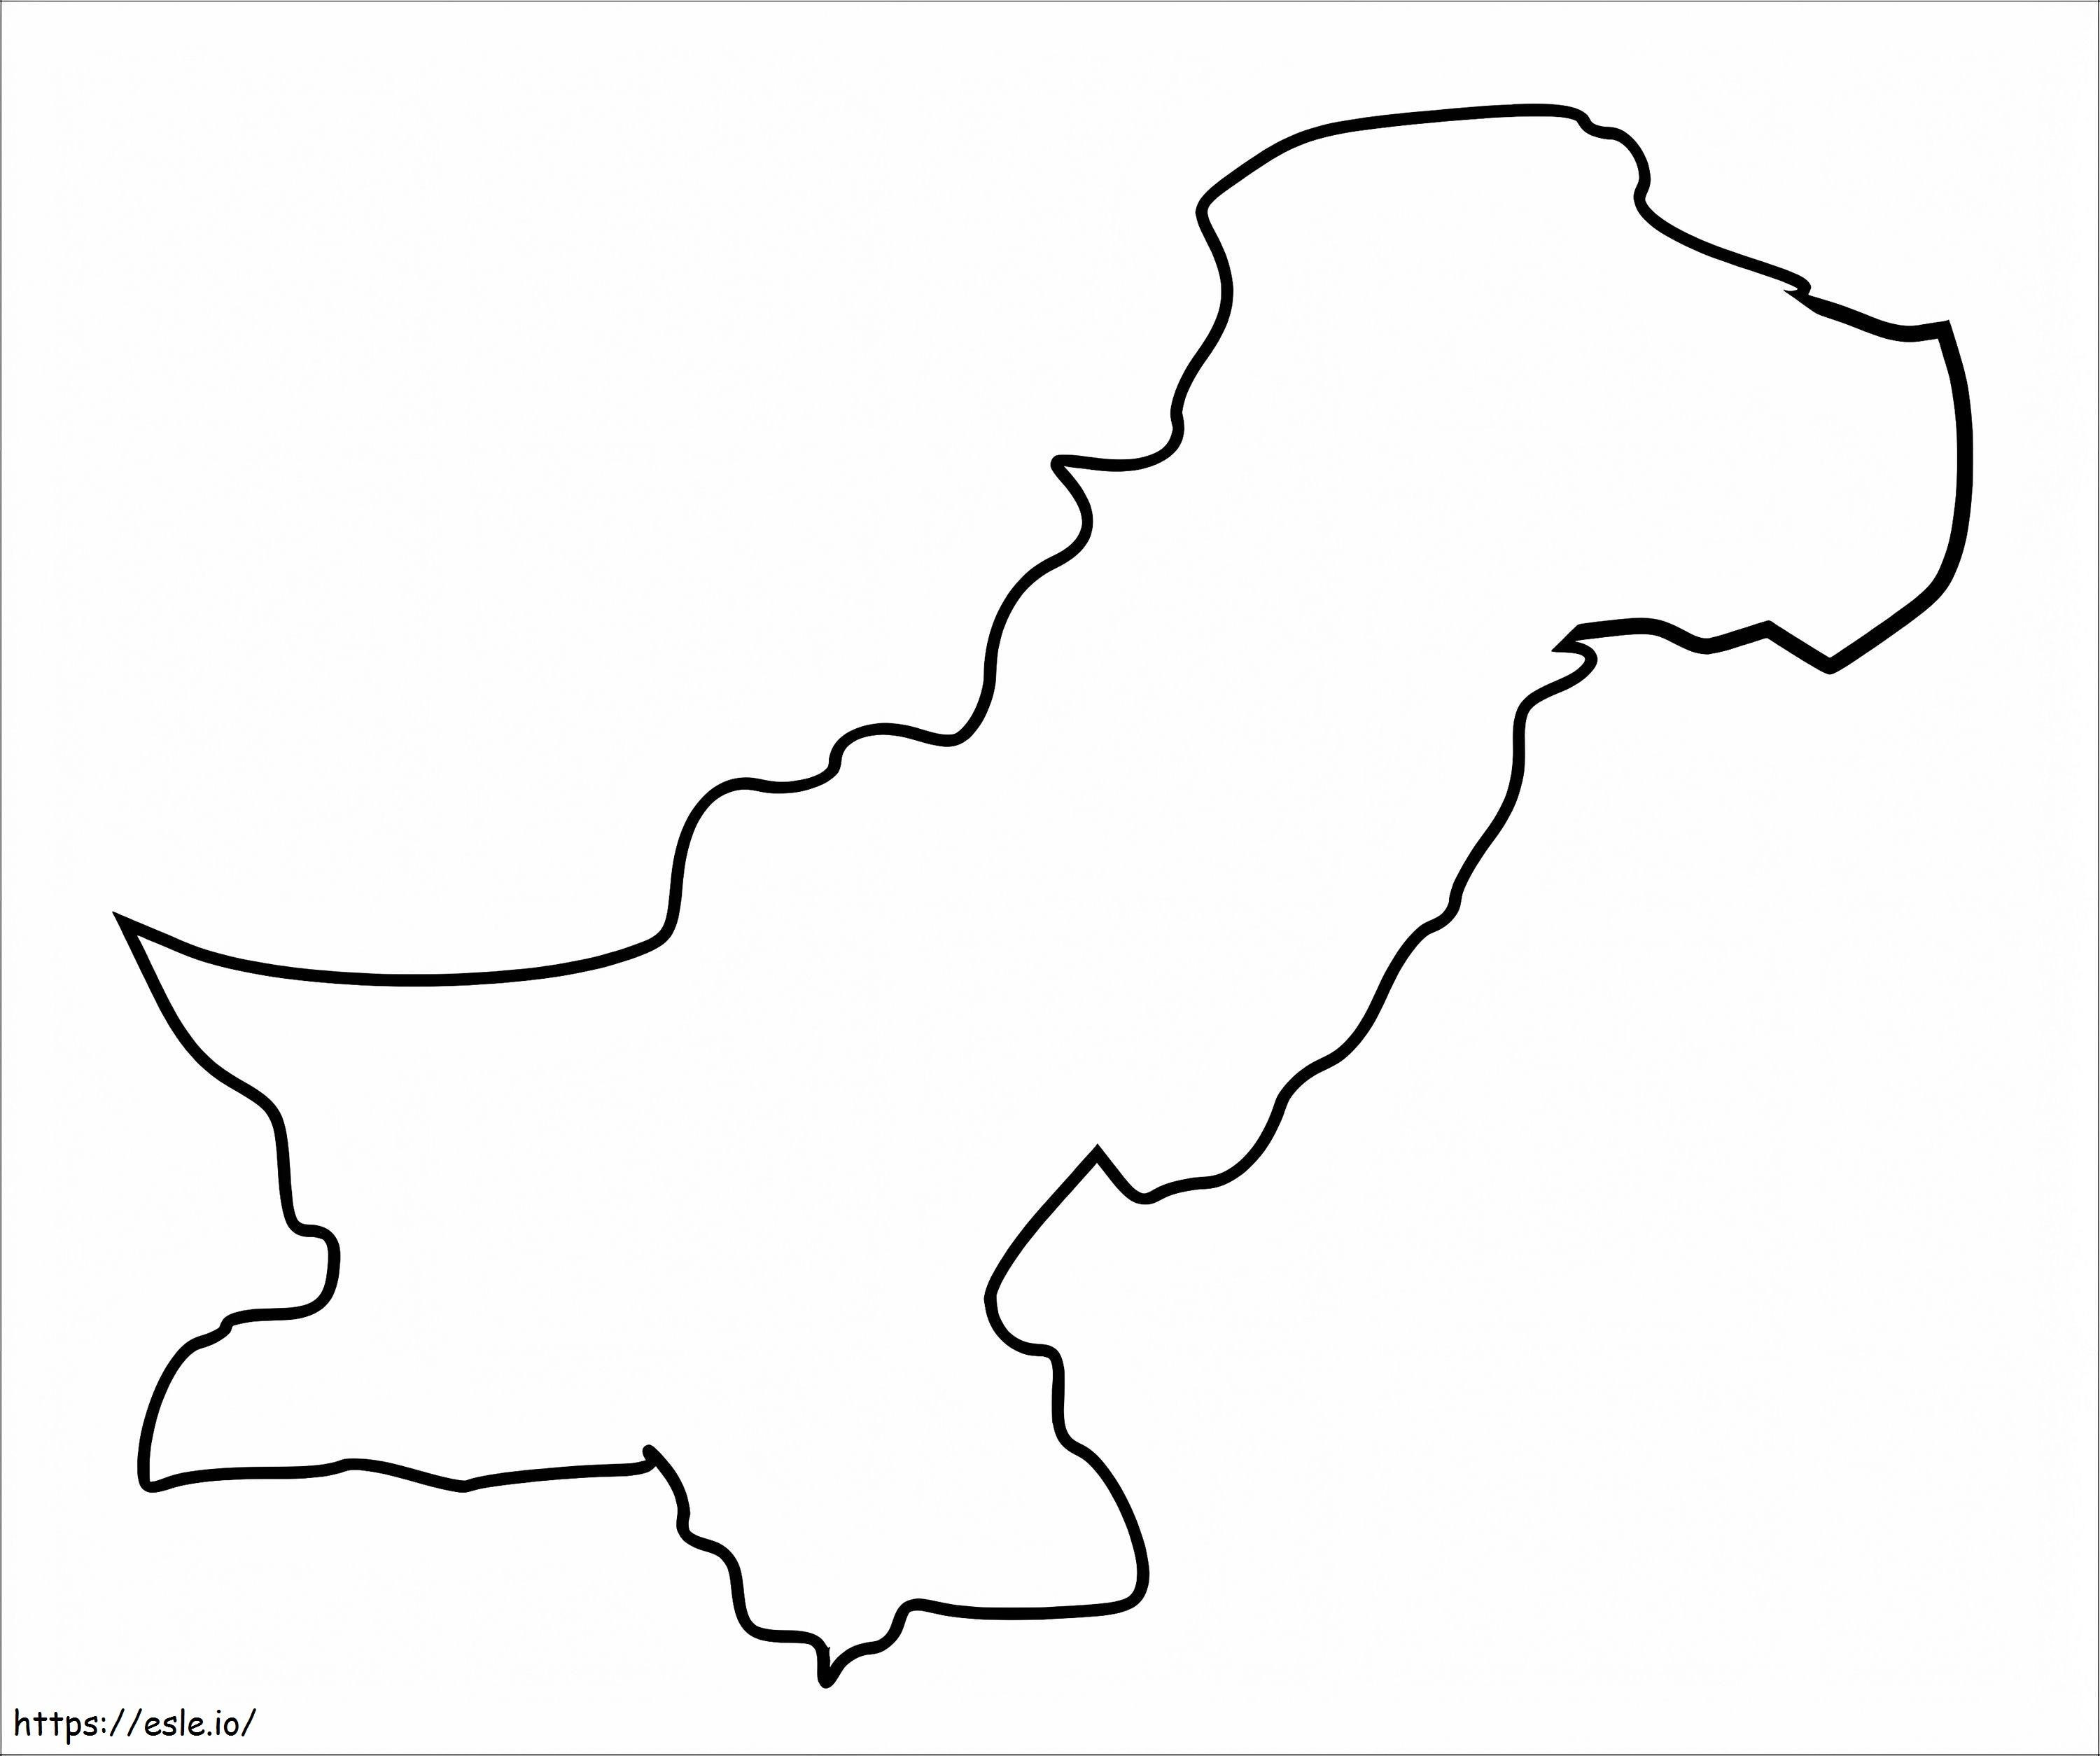 Contorno do mapa do Paquistão para colorir